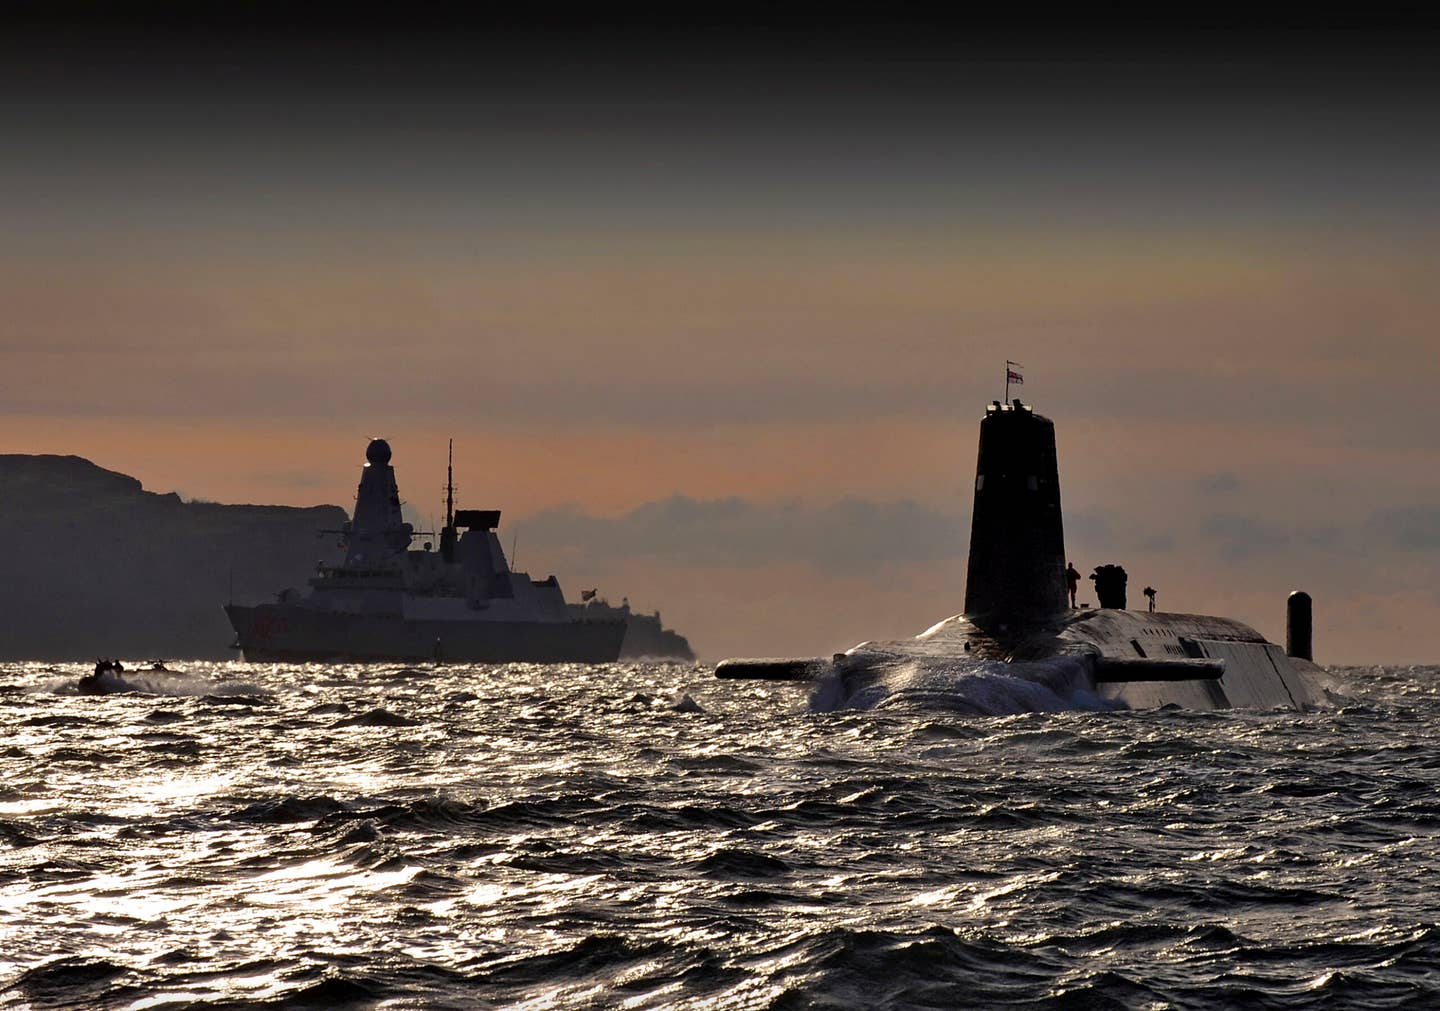 HMS <em>Vanguard</em> arrives back at HMNB Clyde, Faslane, Scotland following a patrol. The Type 45 destroyer HMS <em>Dragon</em> can be seen in the background. <em>Crown Copyright</em>